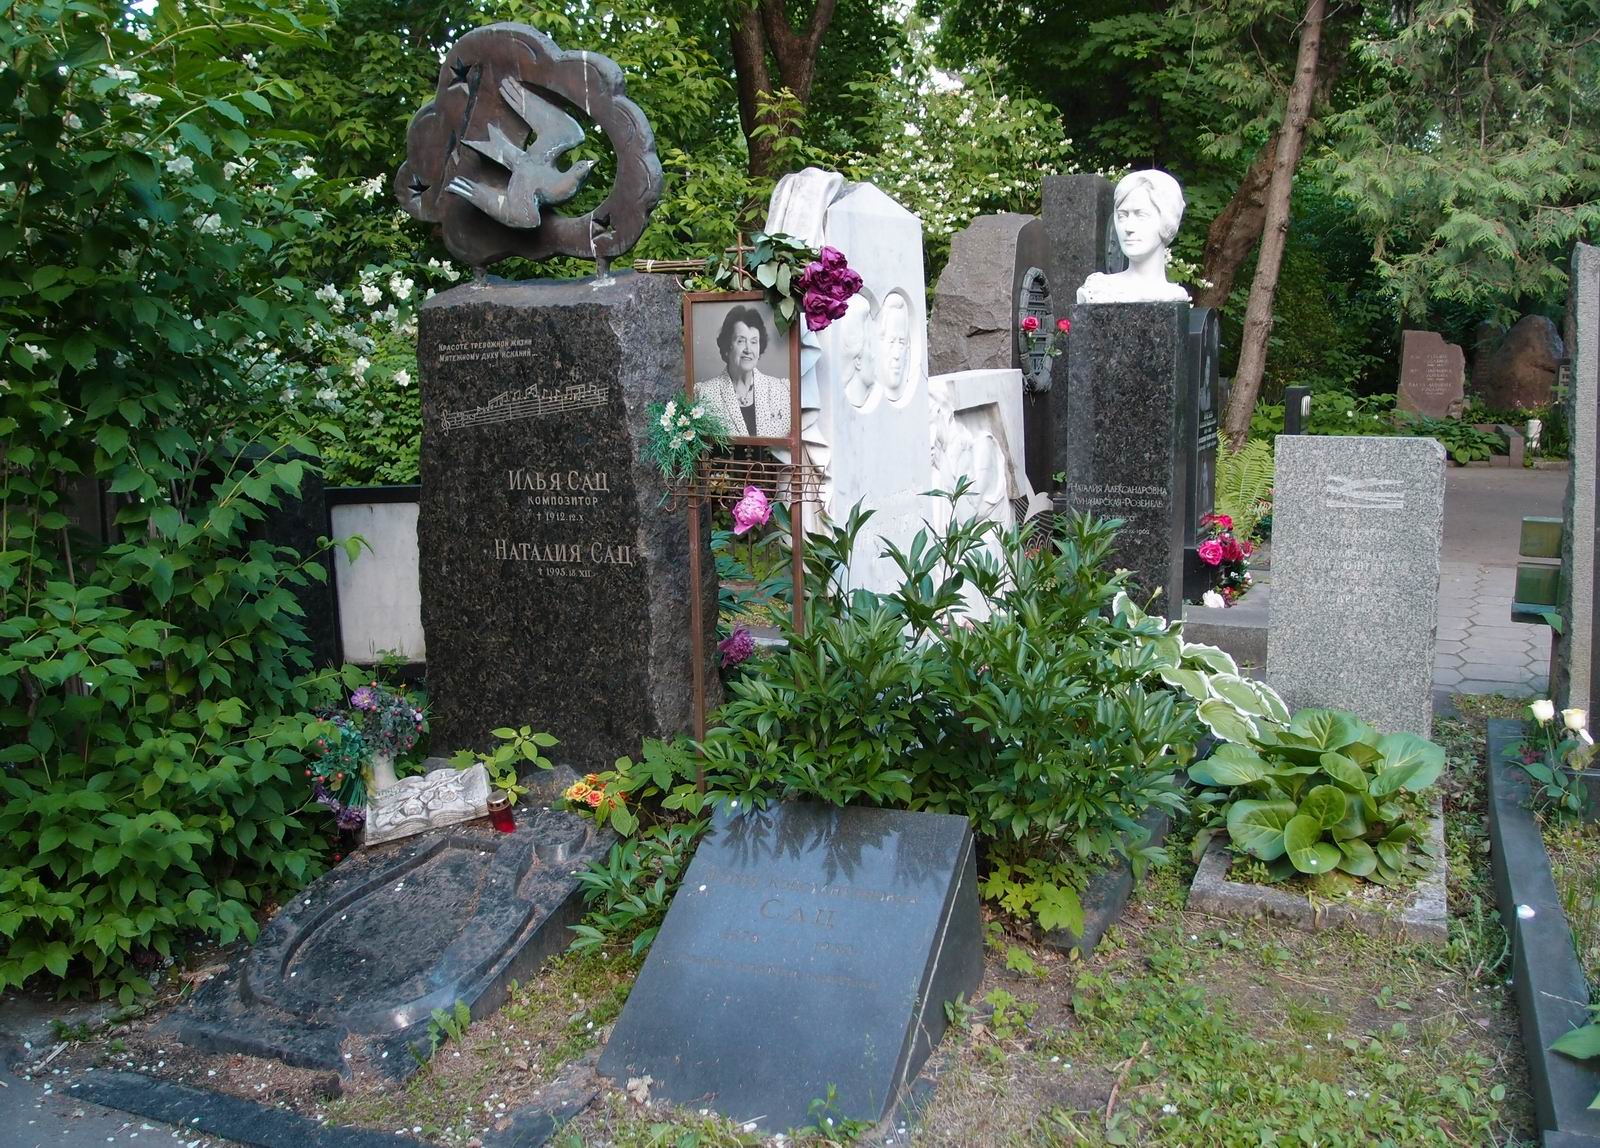 Памятник на могиле Сац И.А. (1875-1912) и Сац Н.И. (1903-1993), ск. А.Балашов, на Новодевичьем кладбище (2-15-16). Нажмите левую кнопку мыши чтобы увидеть фрагмент памятника.